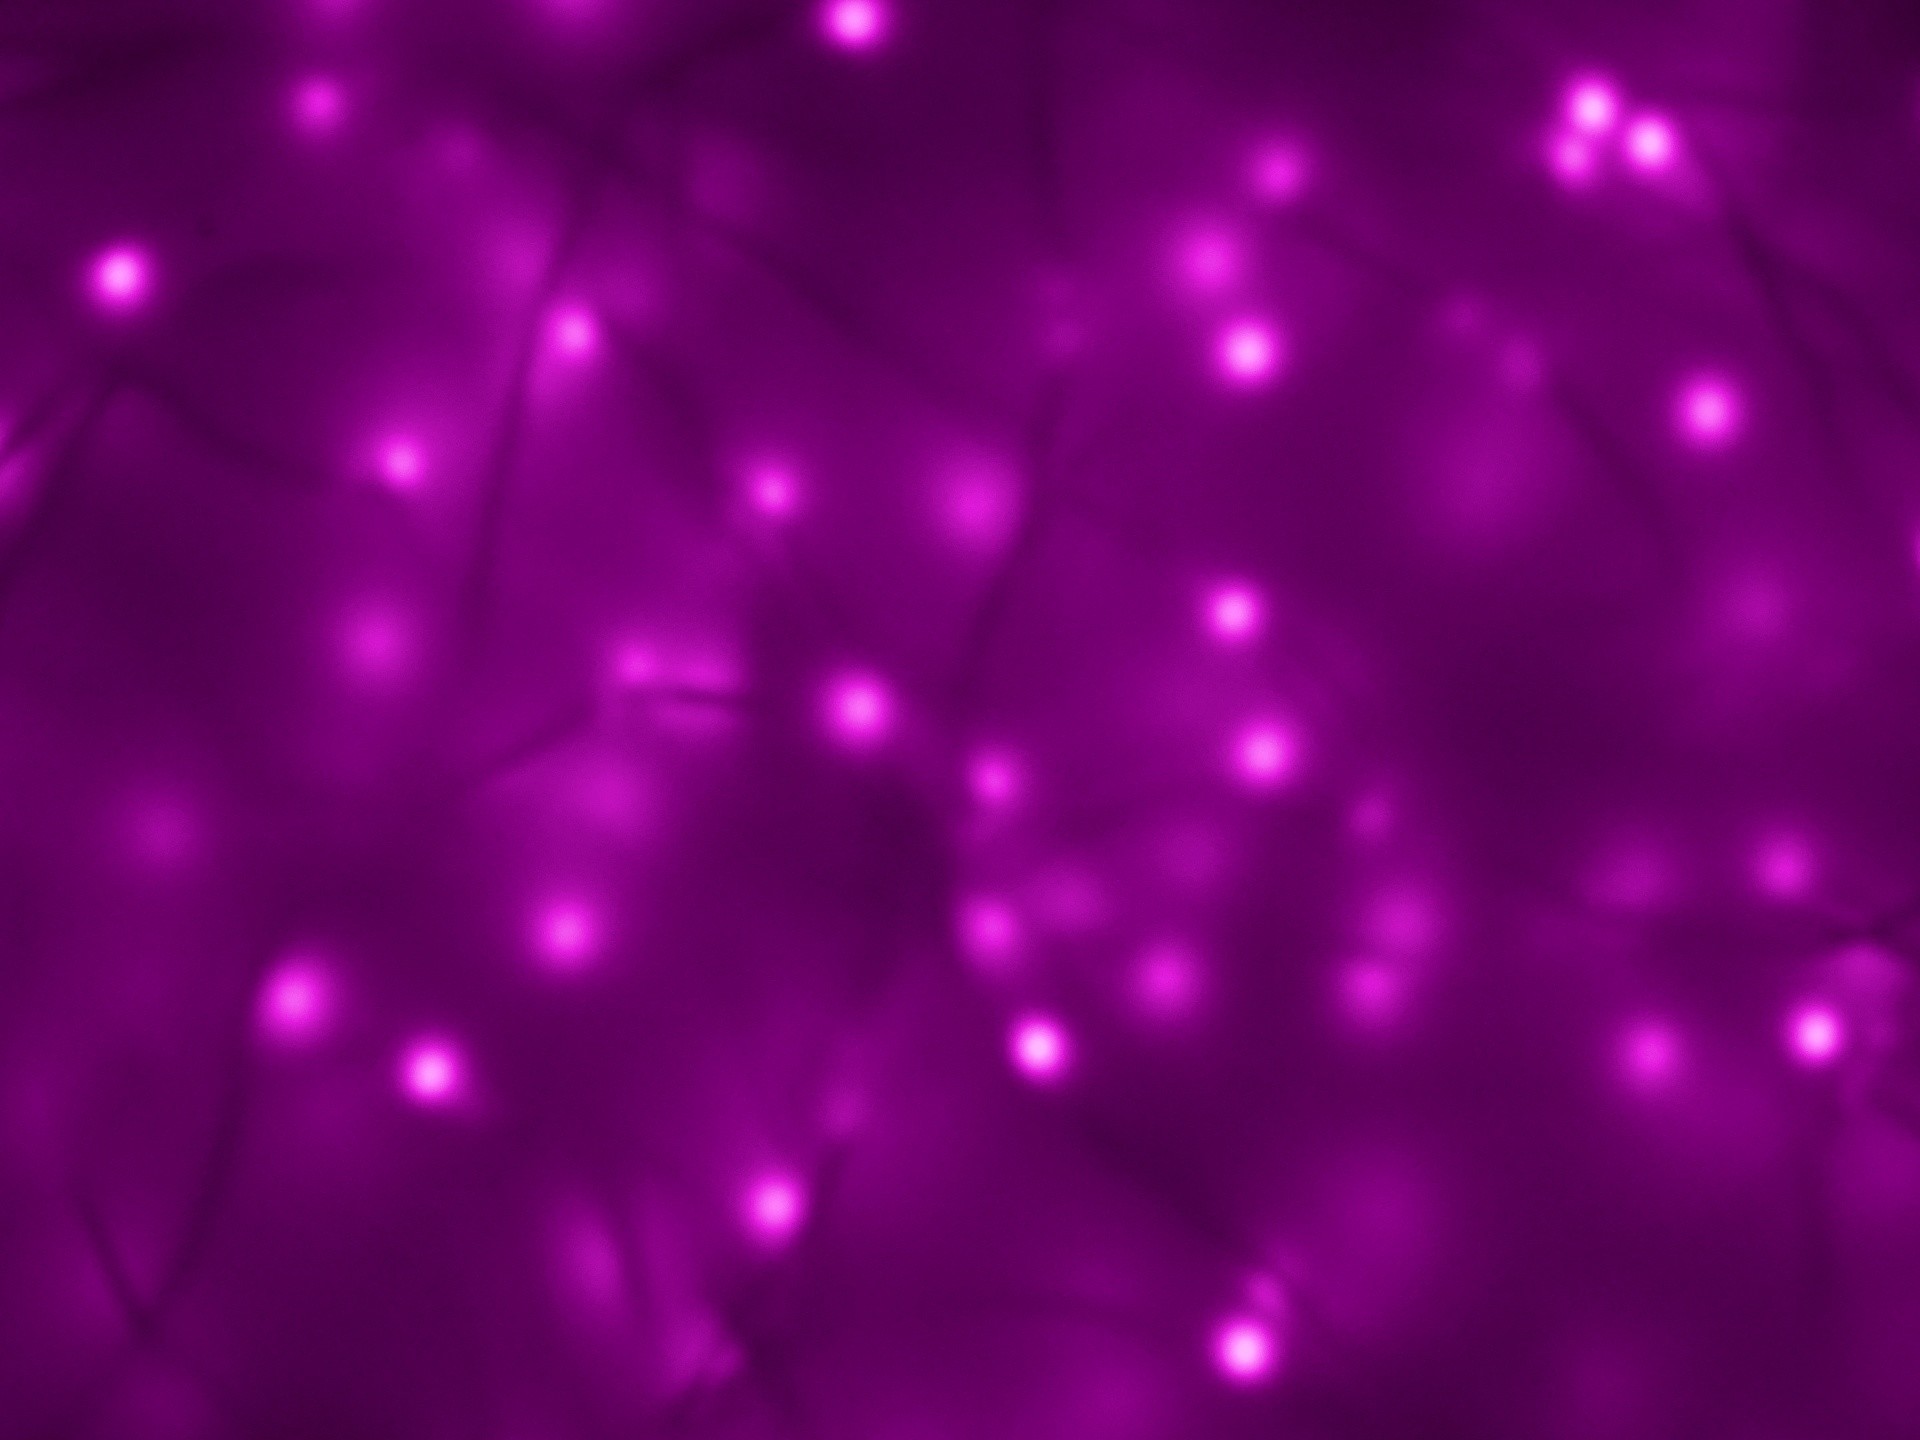 1920x1440 1920 x 1440 px, â½ 131 times. purple backgrounds neon lights ...